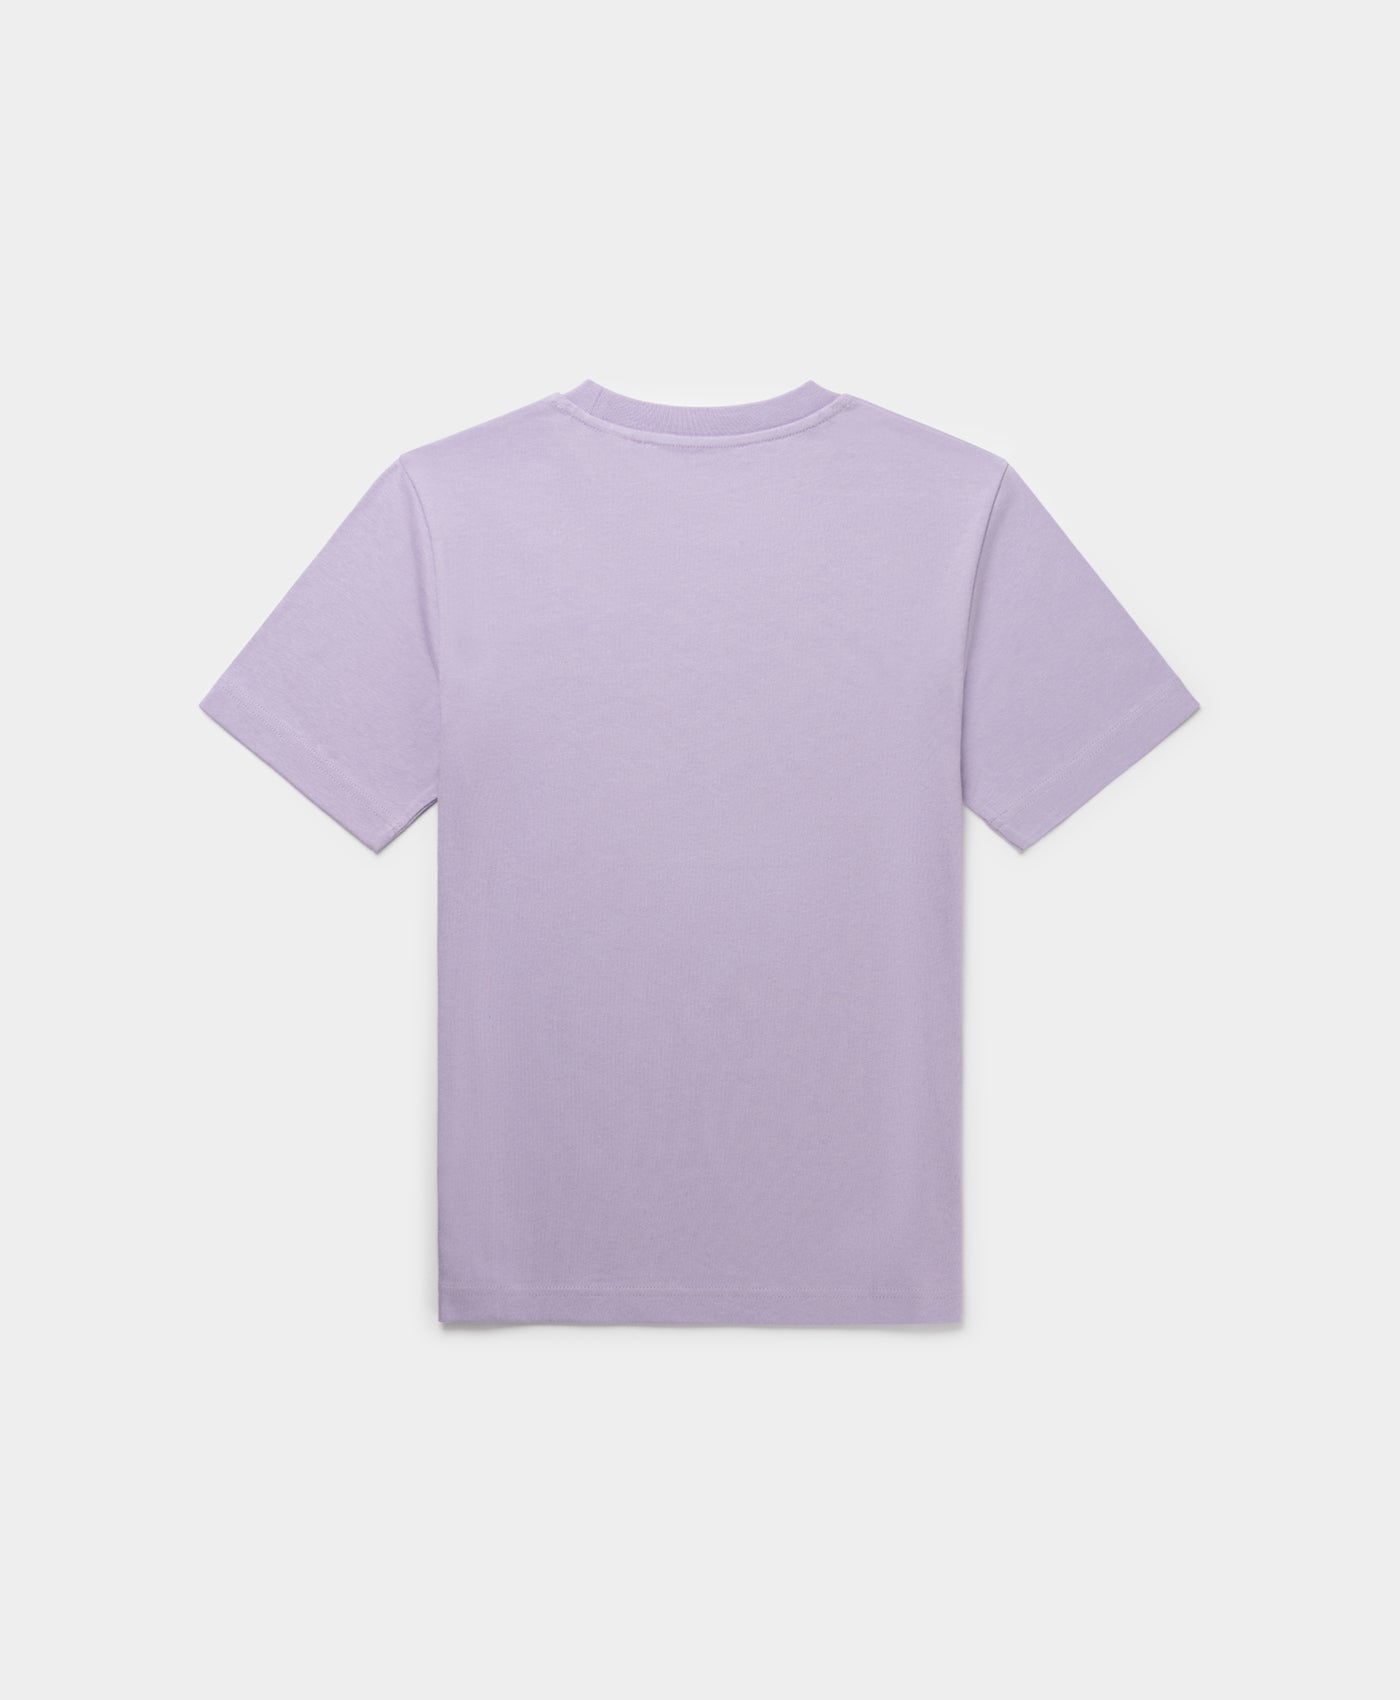 DP - Purple Rose Esy Circle T-Shirt - Packshot - Rear